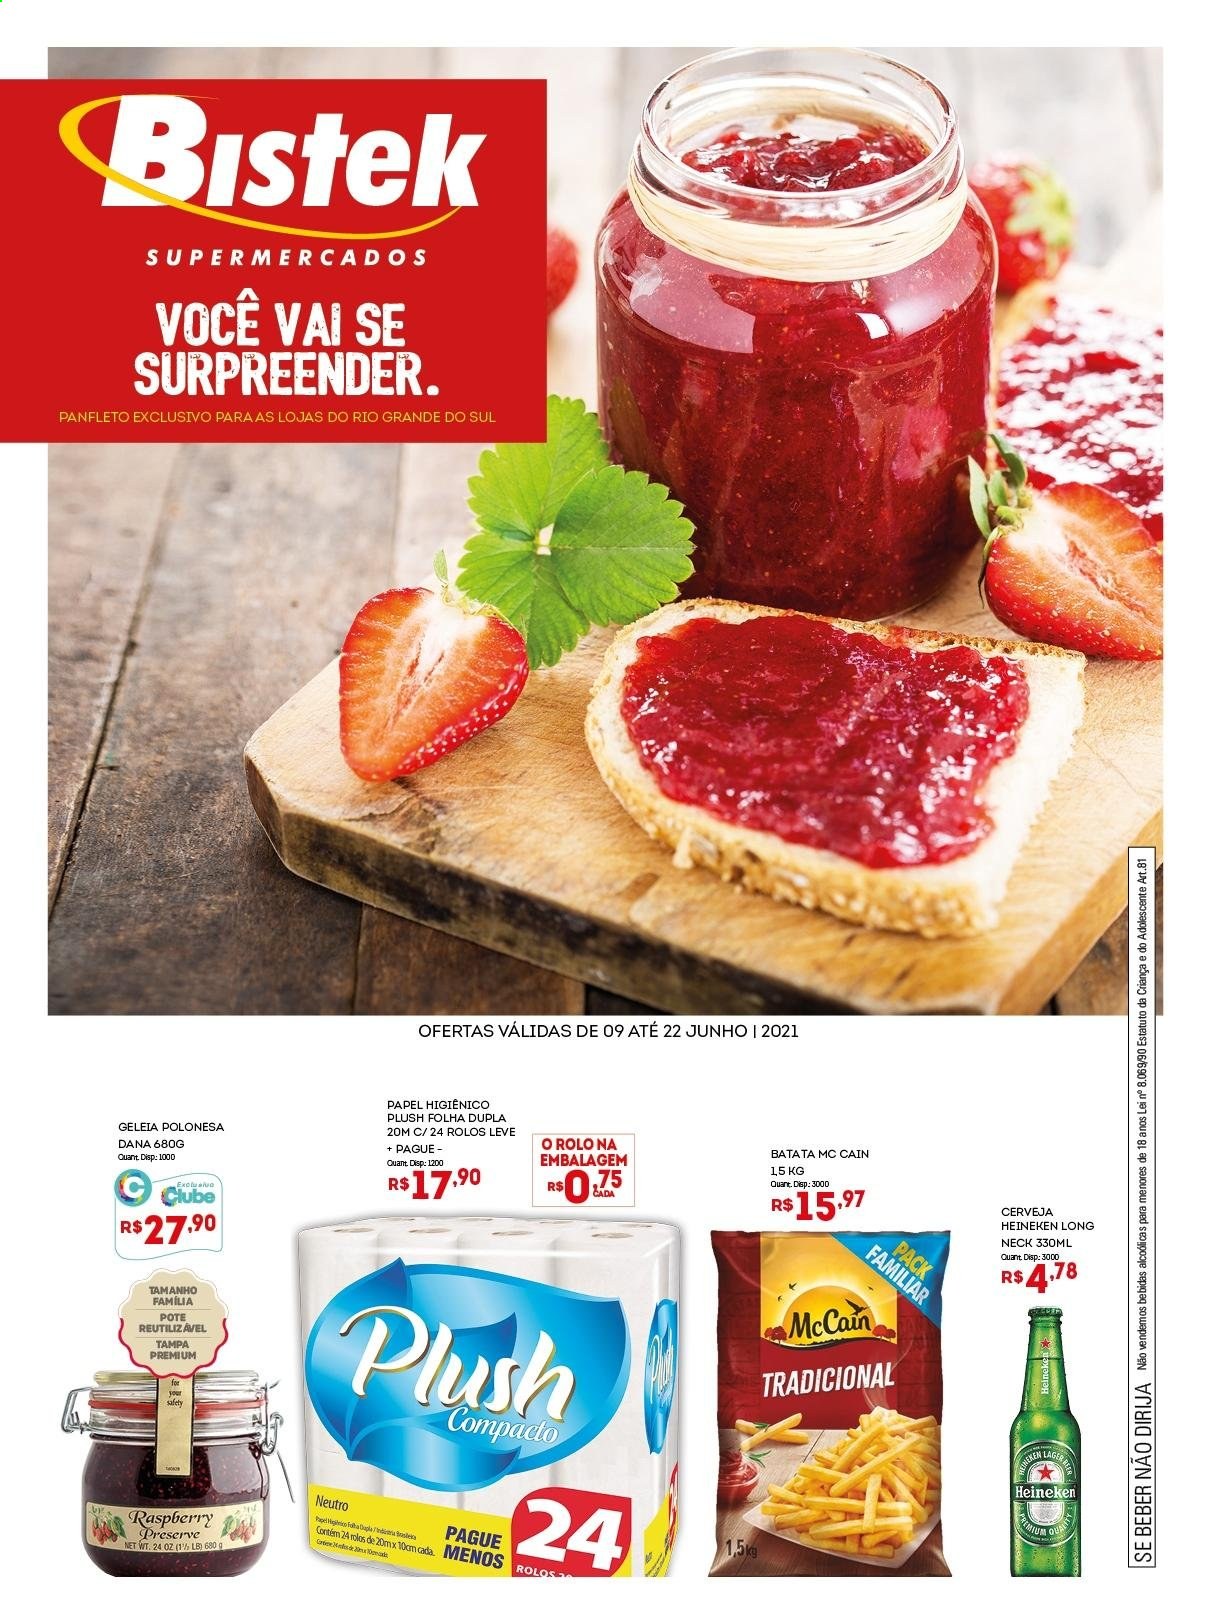 thumbnail - Folheto Bistek Supermercados - 09/06/2021 - 22/06/2021 - Produtos em promoção - Heineken, batata, McCain, geleia, papel higiénico. Página 1.